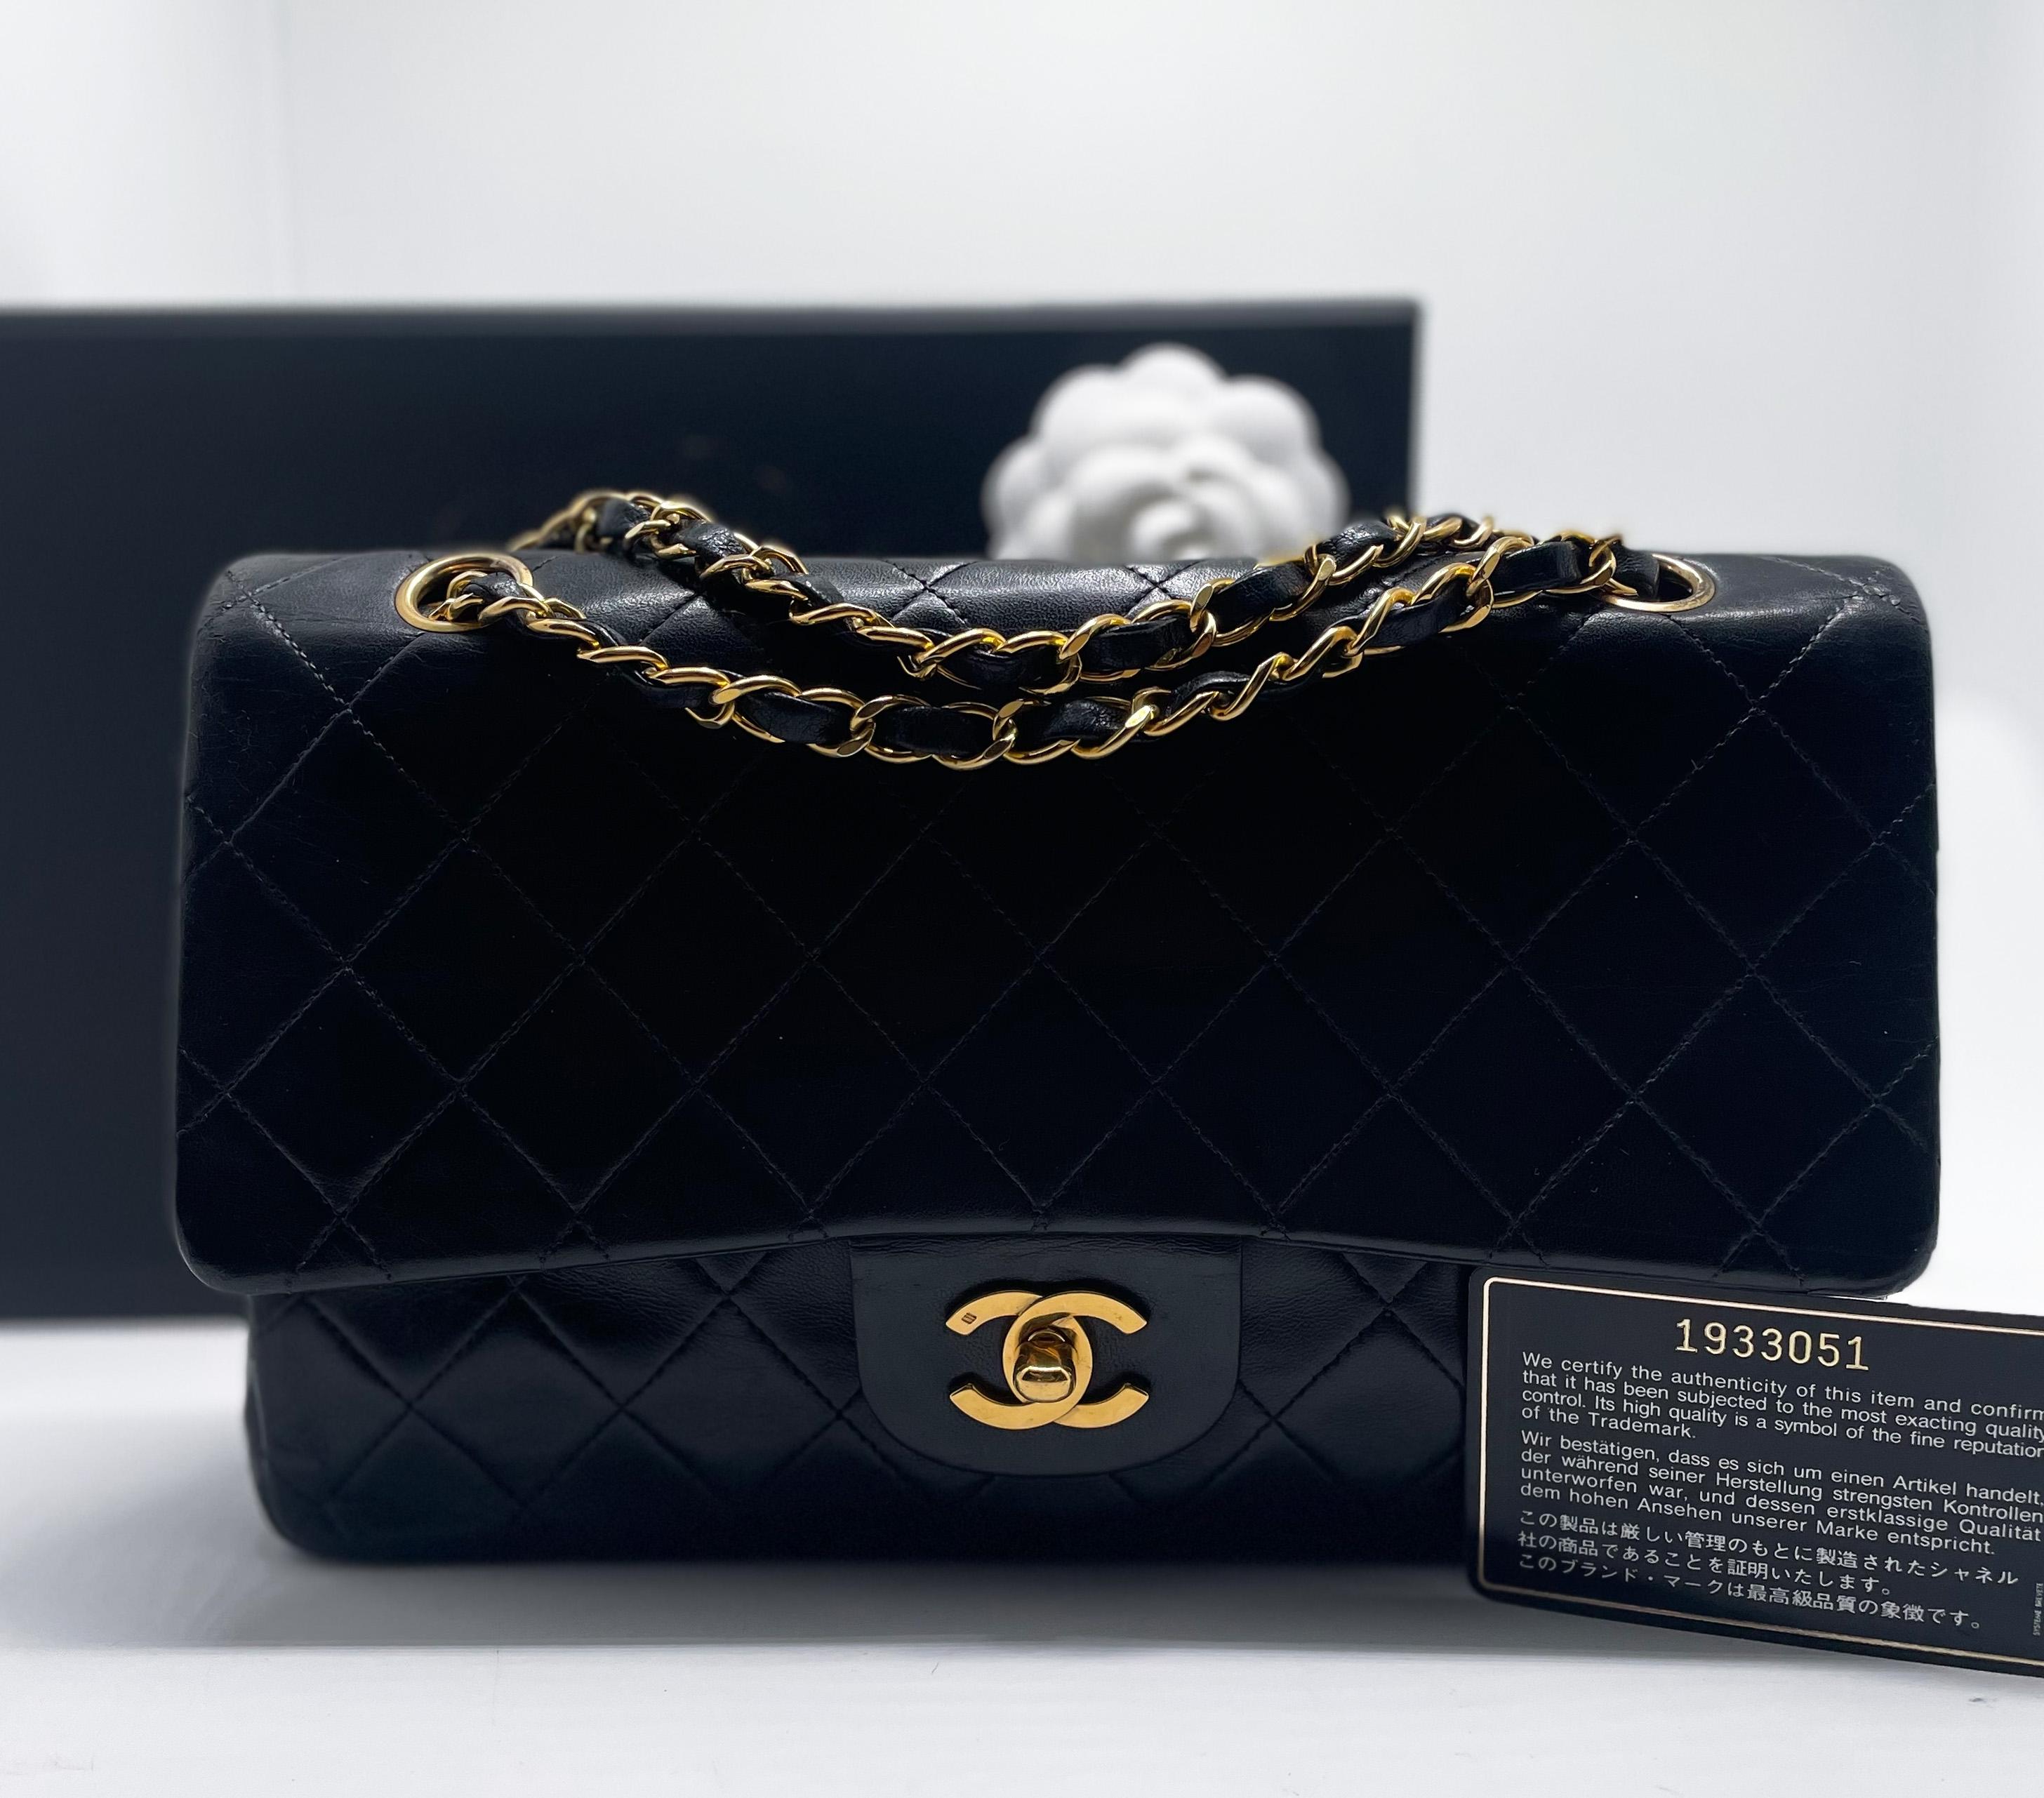 Indémodable sac à main Chanel Classique en cuir d'agneau noir et métal doré 24 carats. Ce must have est doté d'un double rabat Timeless en cuir matelassé noir, d'une chaîne en métal doré entrelacée de cuir noir qui permet de le porter à la main ou à